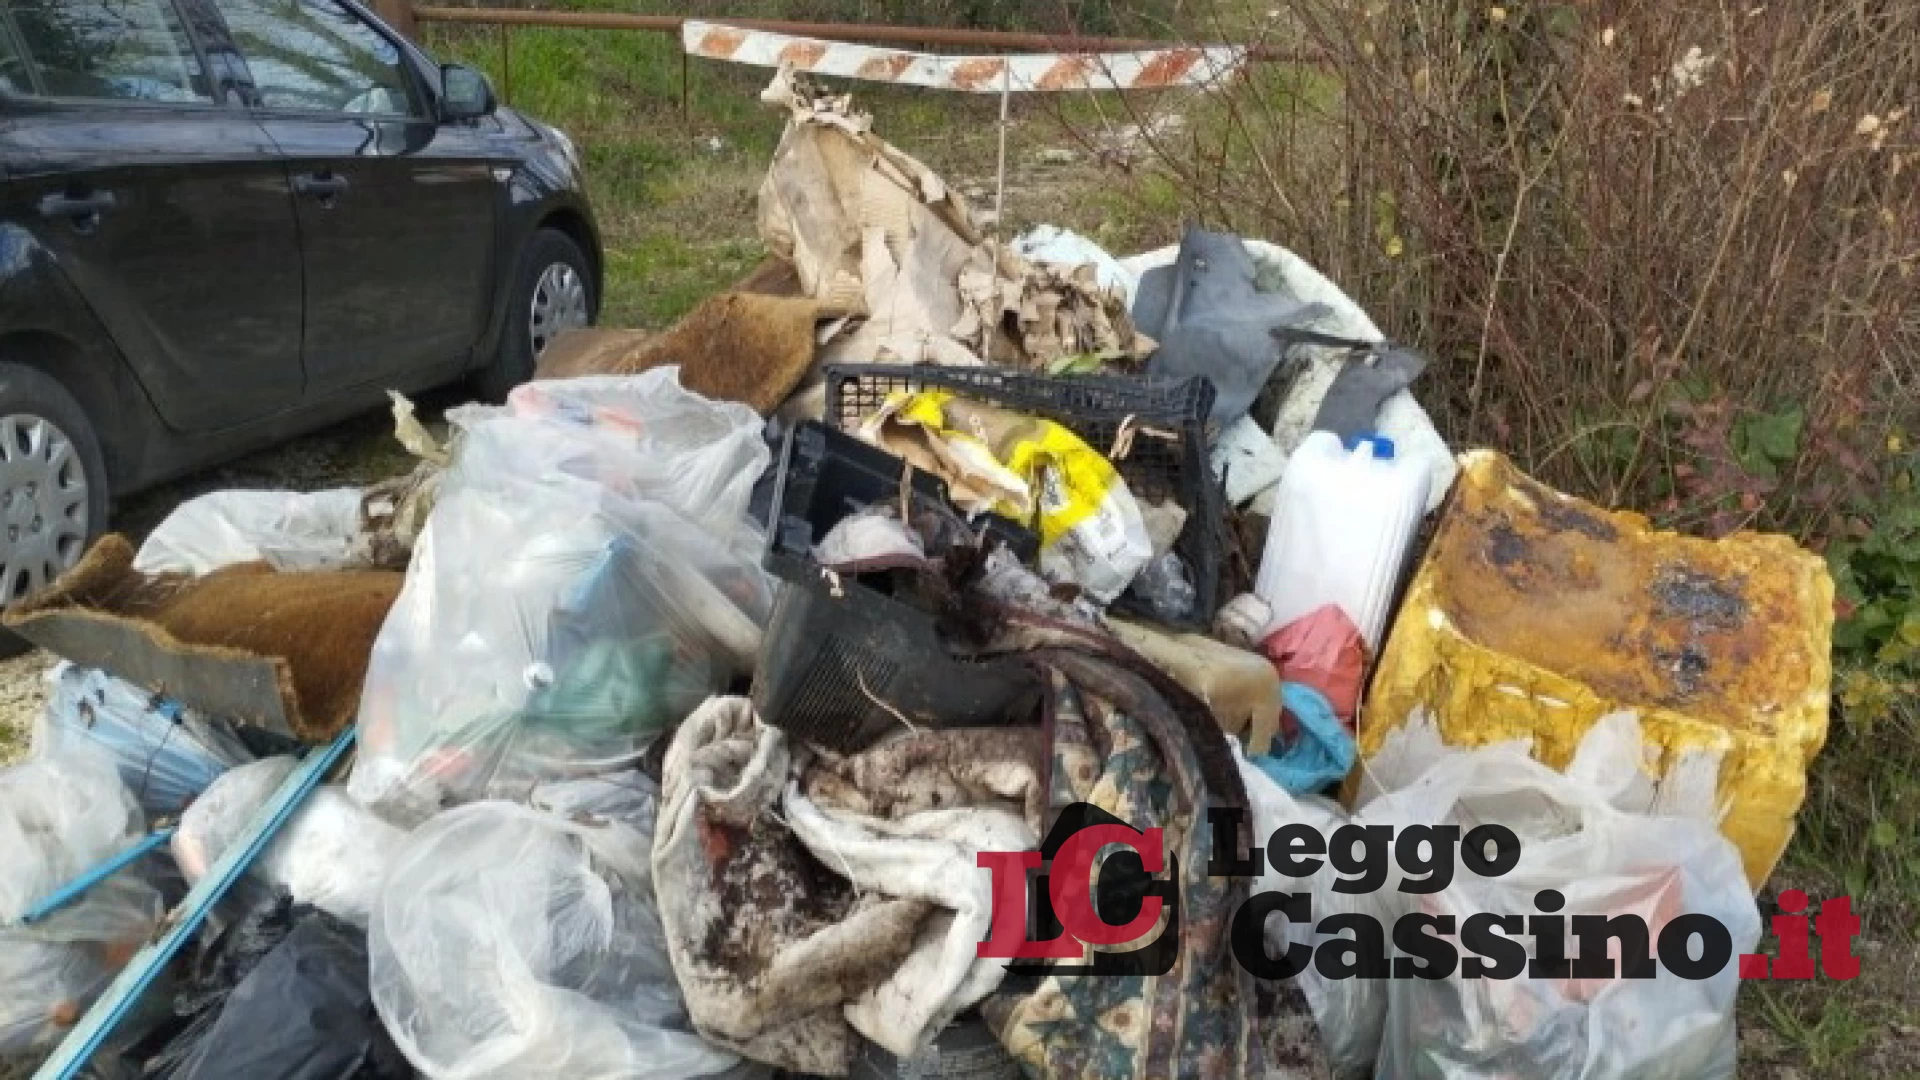 "Periferie di Cassino invase dai rifiuti. Servono le foto-trappole"